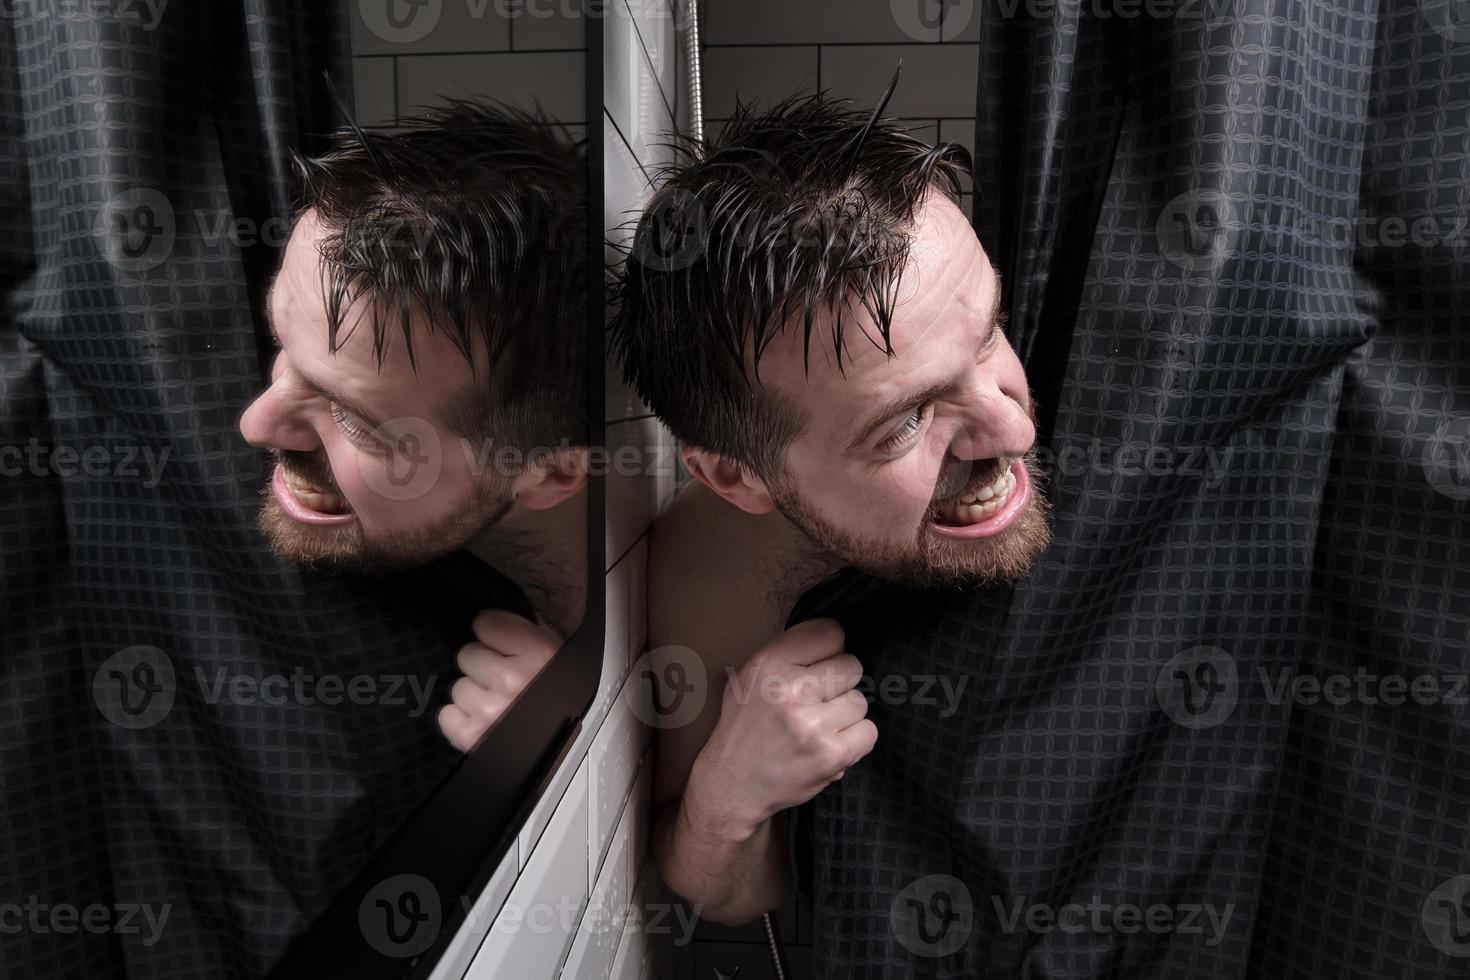 nat Mens looks uit van achter een douche gordijn, looks kwaadaardig Bij iemand en Bares zijn tanden. foto